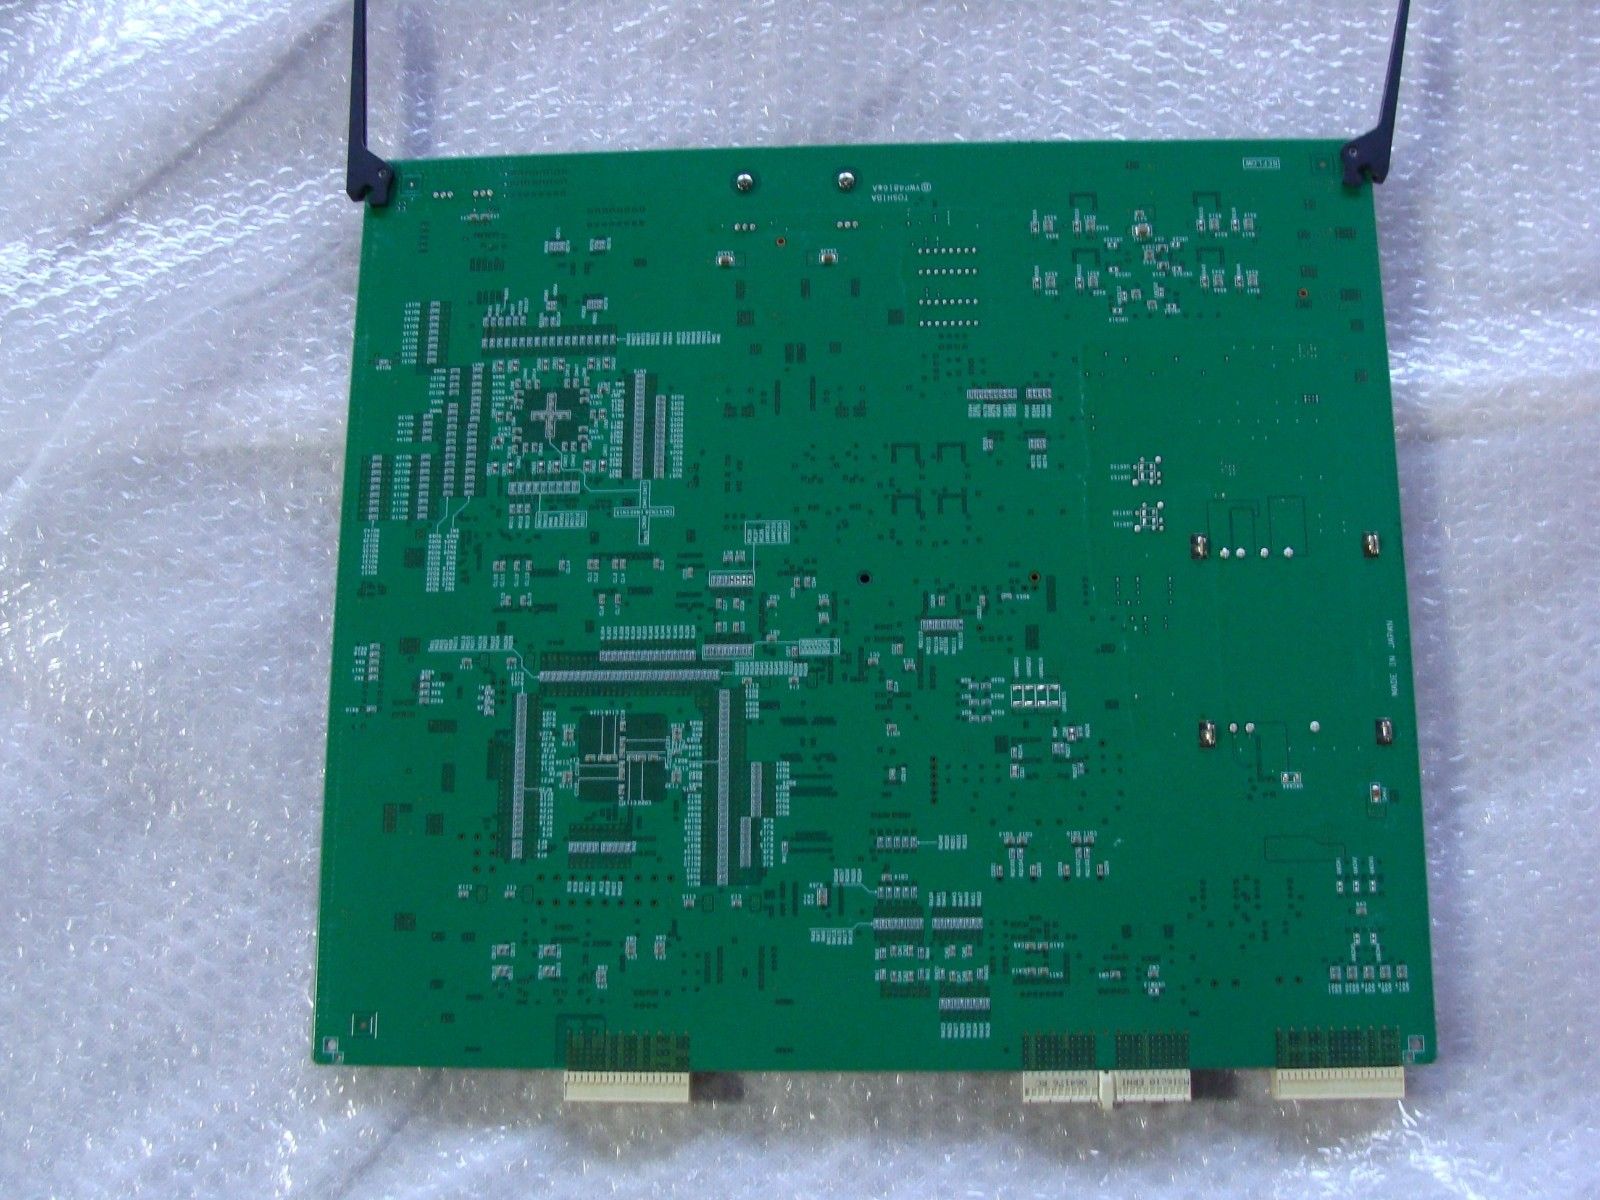 PM30-35066 E REV. C YWP4816 A MC TOSHIBA APLIO XG SSA-790A ULTRASOUND BOARD DIAGNOSTIC ULTRASOUND MACHINES FOR SALE